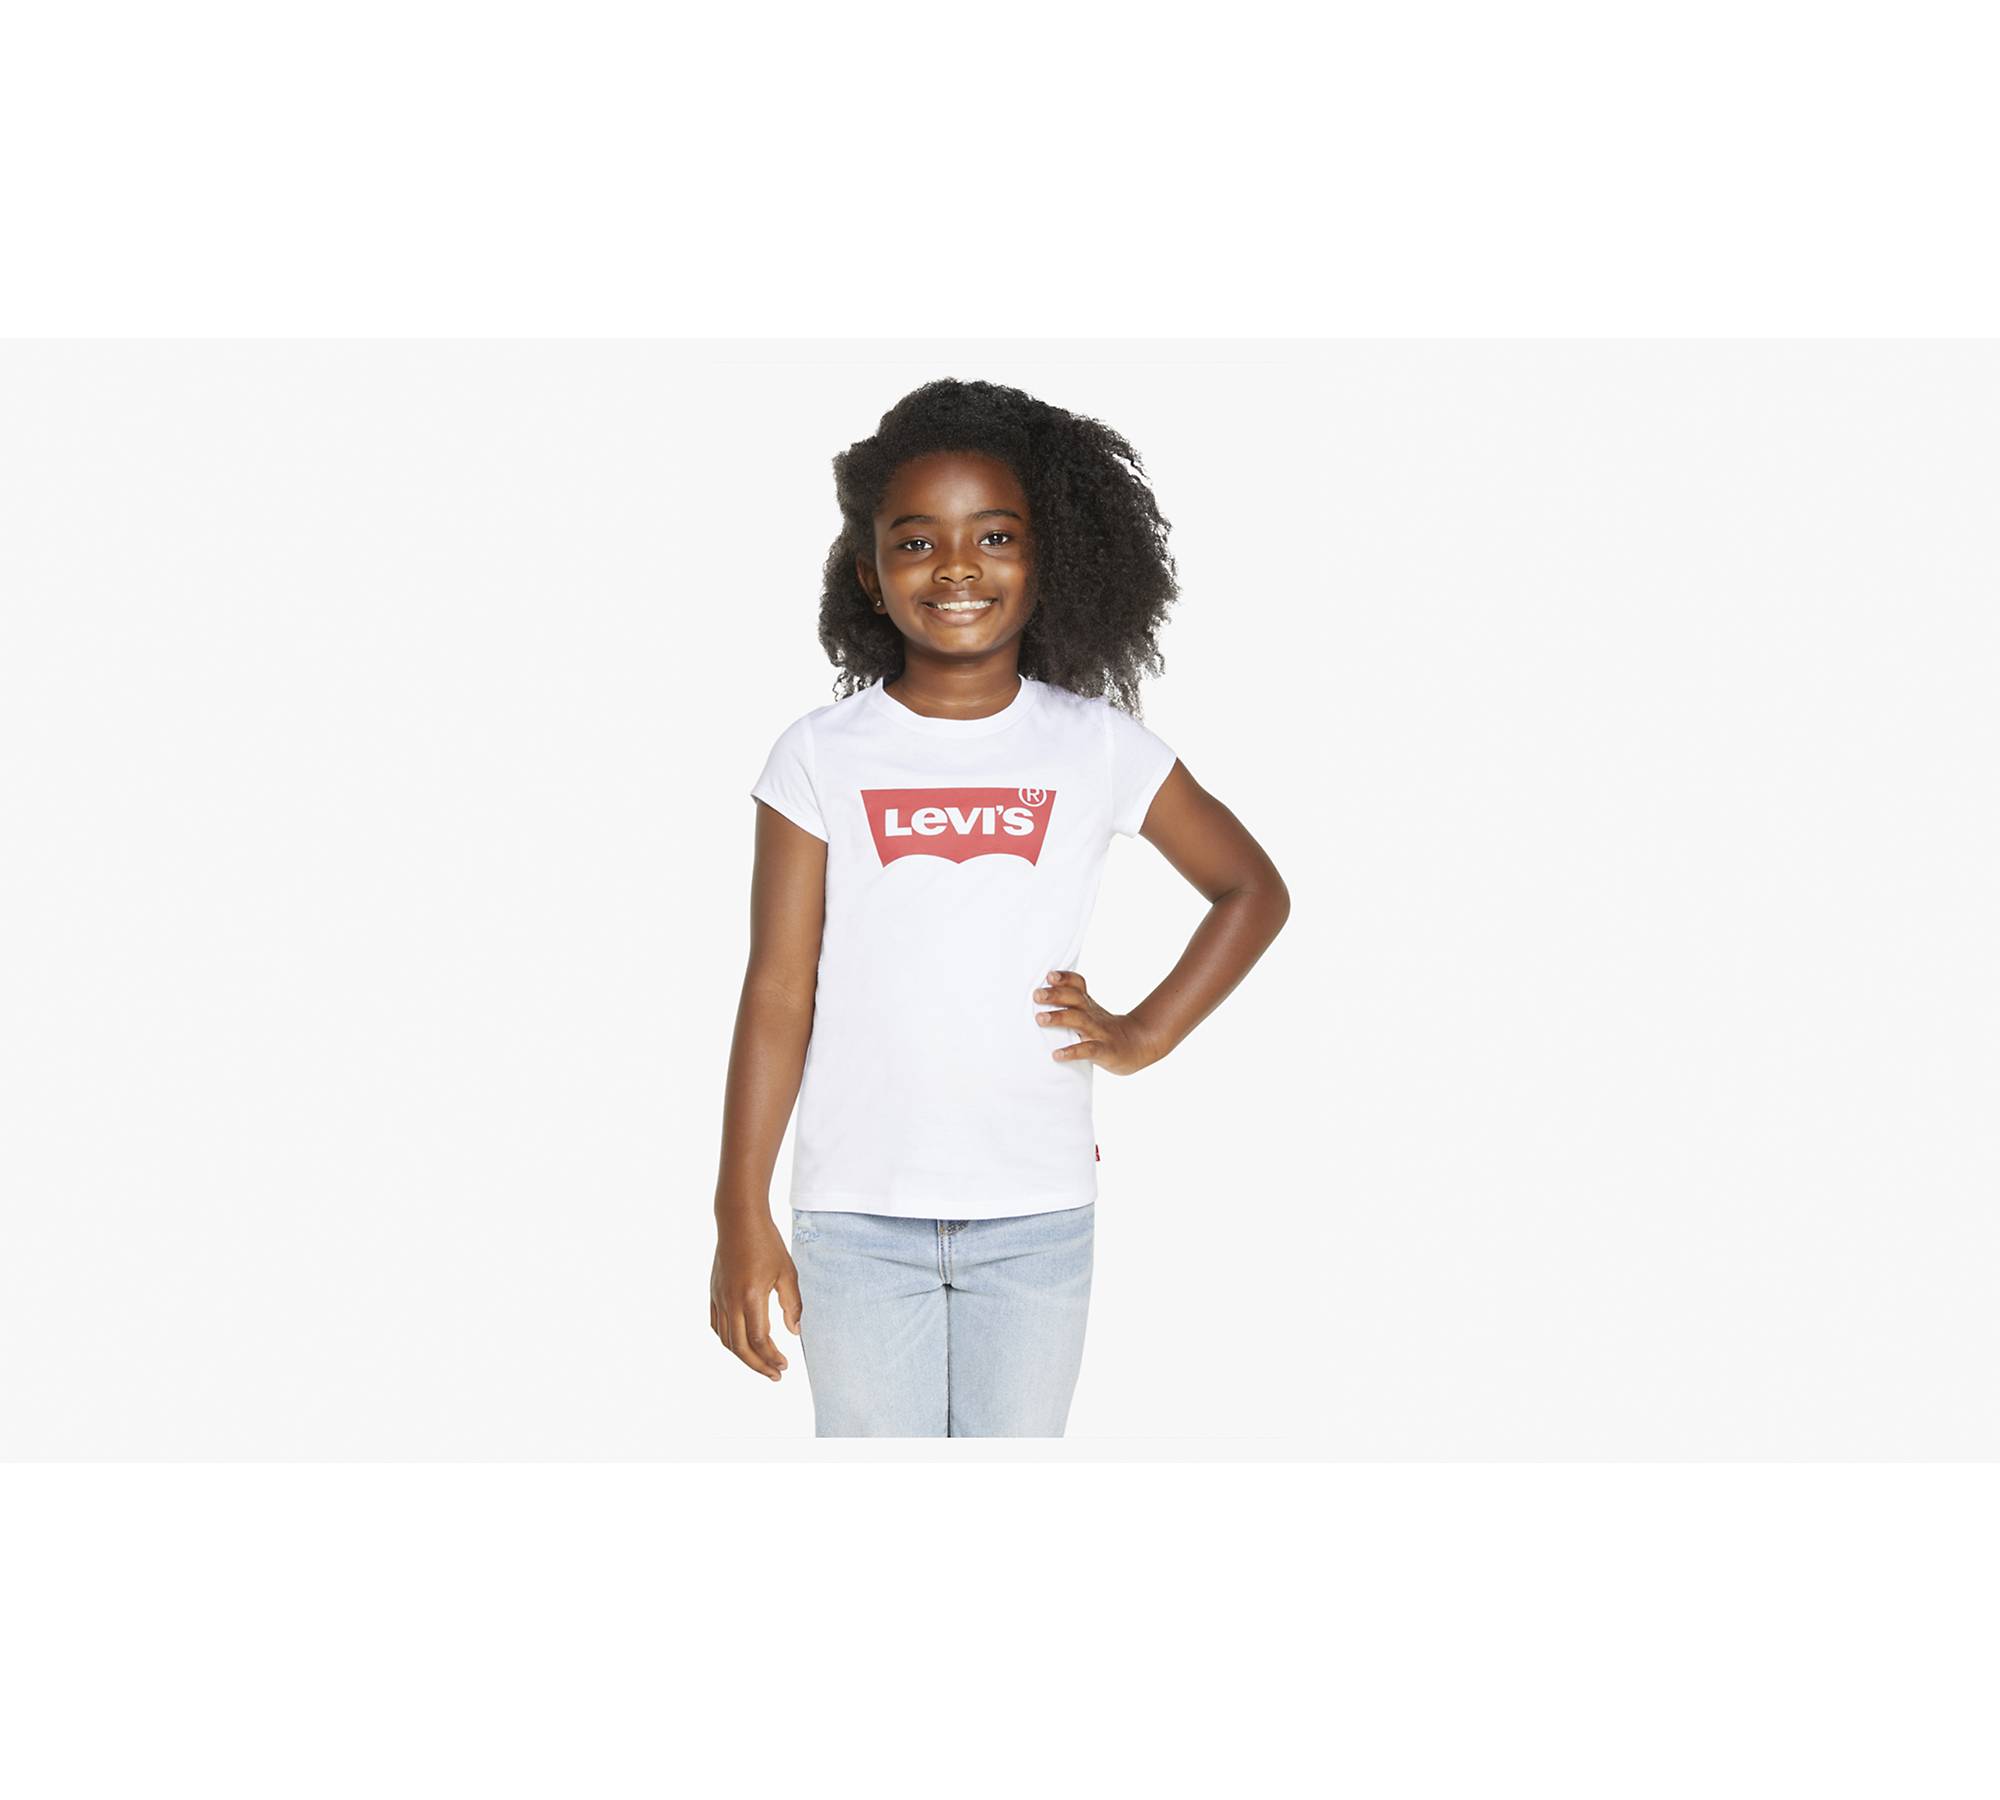 Levi’s® Logo T-Shirt Little Girls 4-6X 1